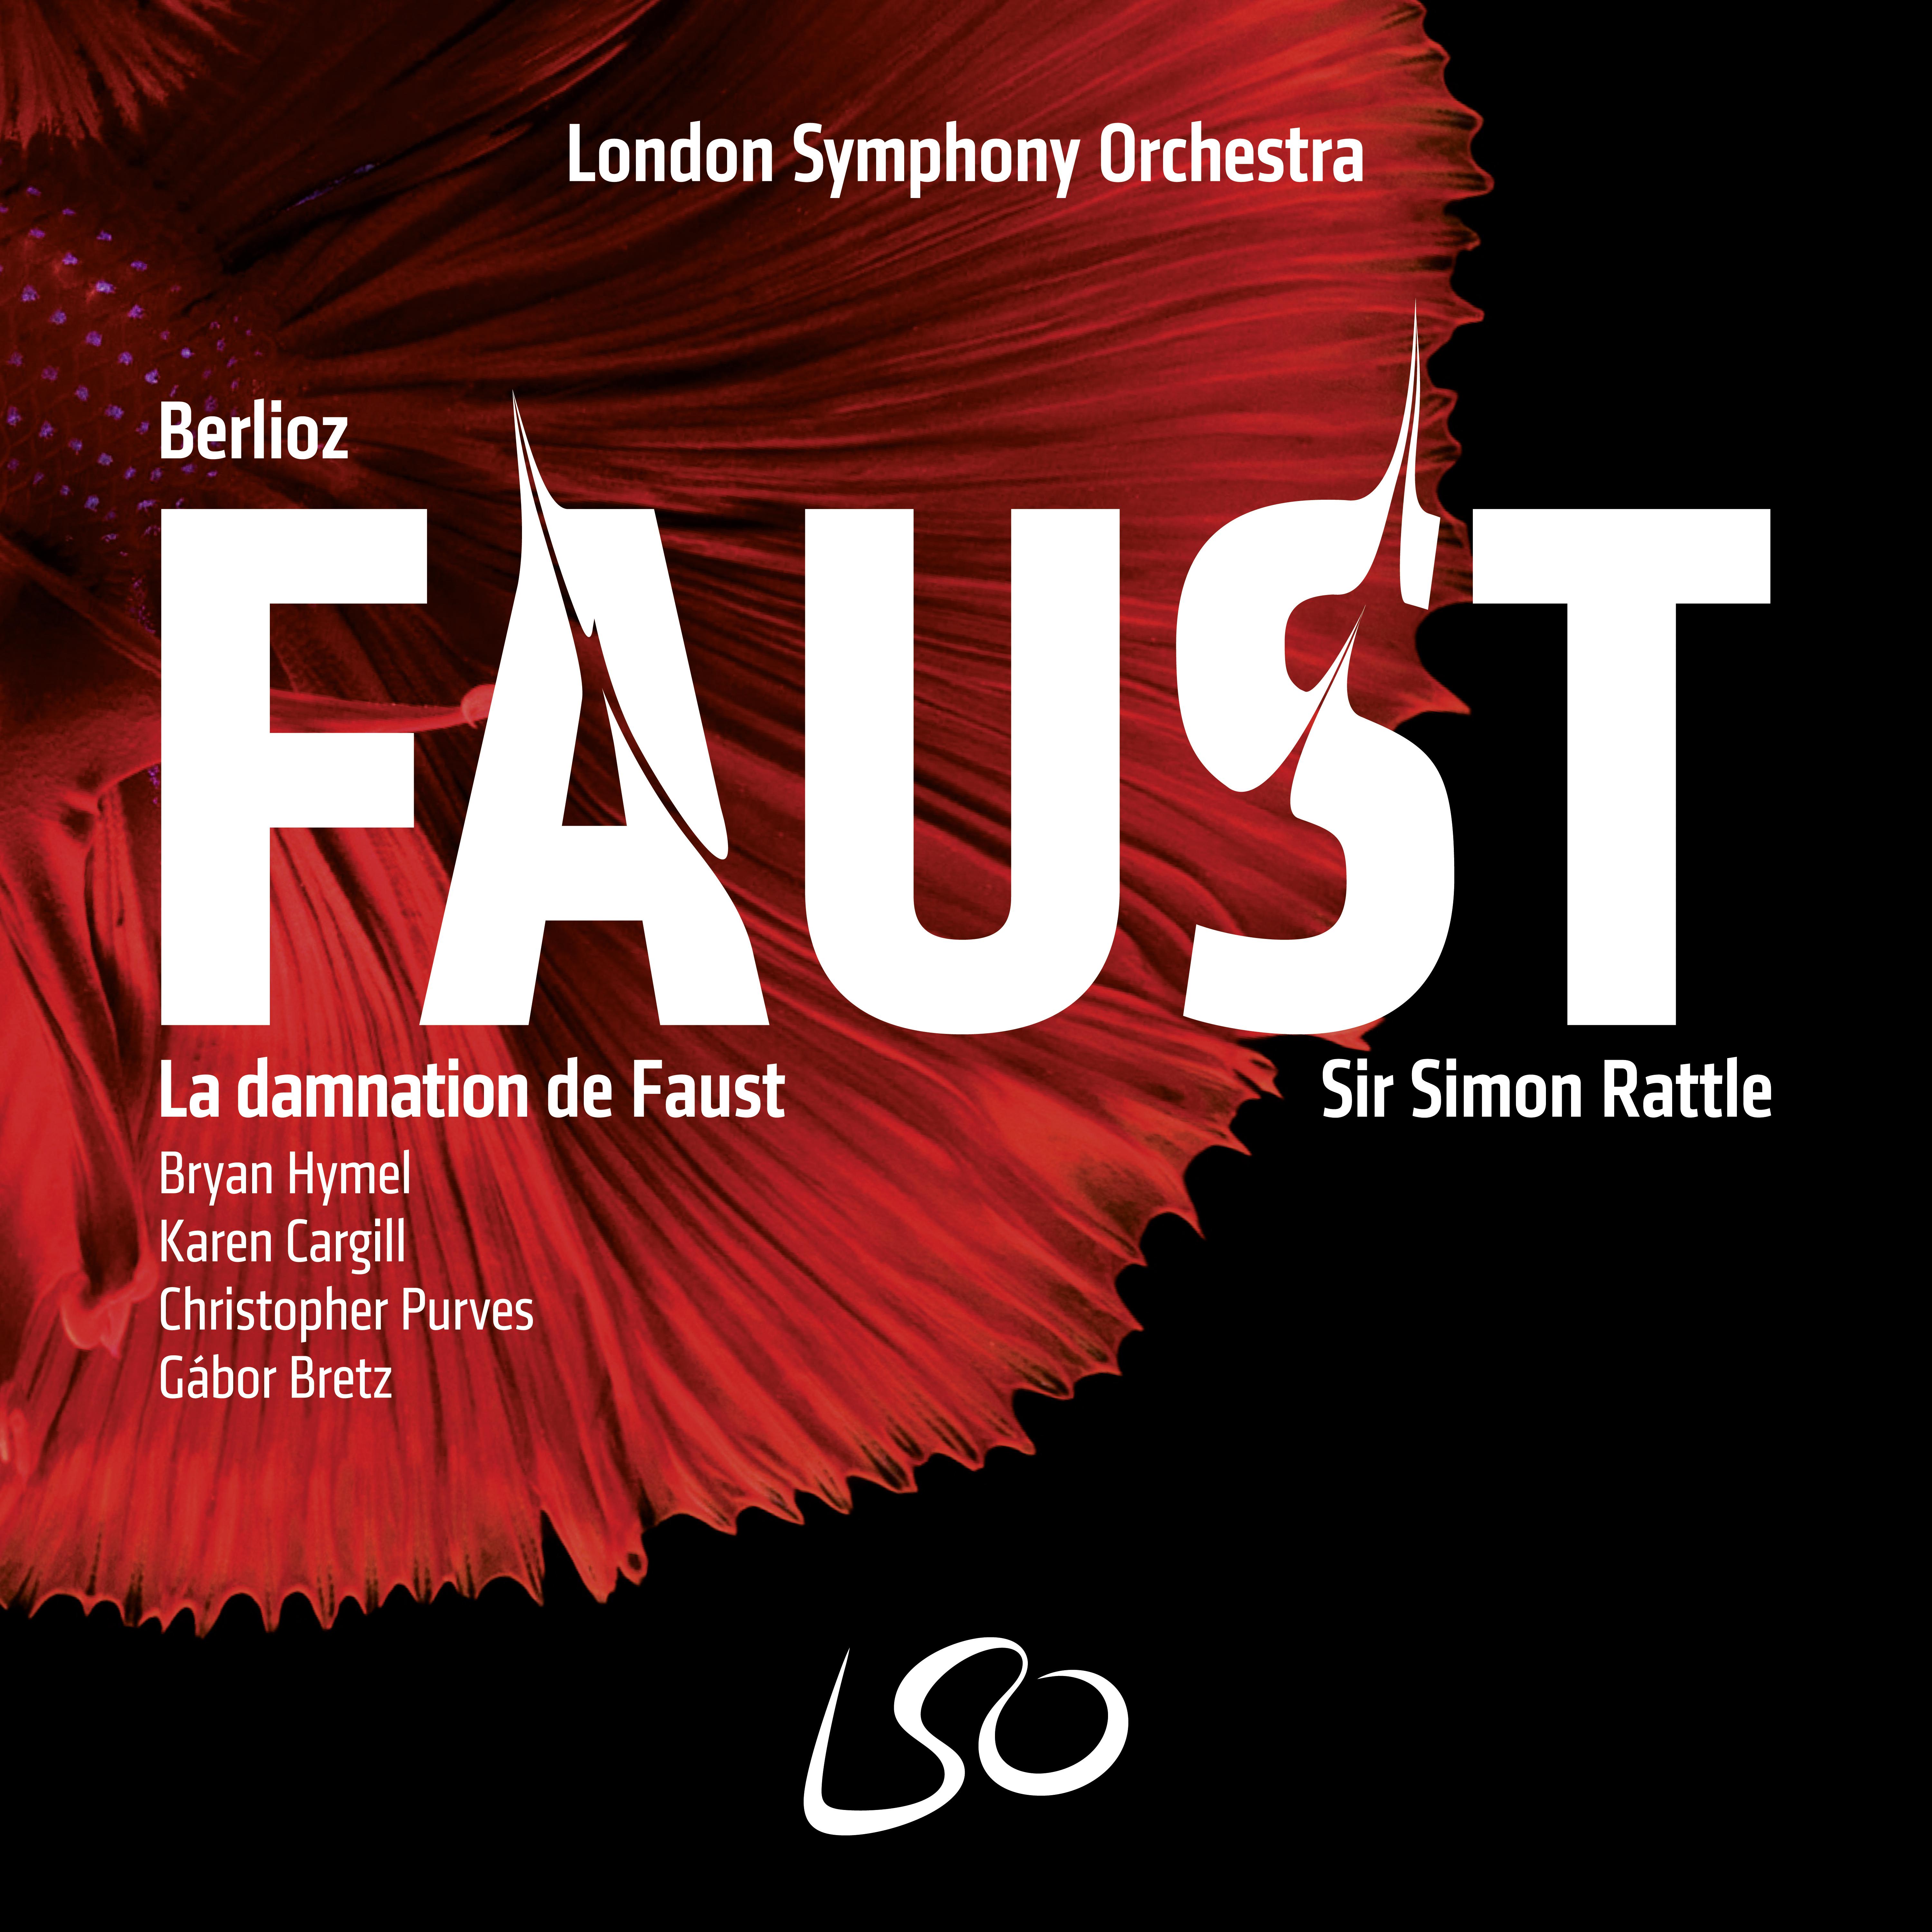 La Damnation de Faust, Op. 24, H. 111: Pt. II: Sce ne VII  Choeur de gnomes et de sylphes. Songe de Faust. " Dors! heureux Faust"